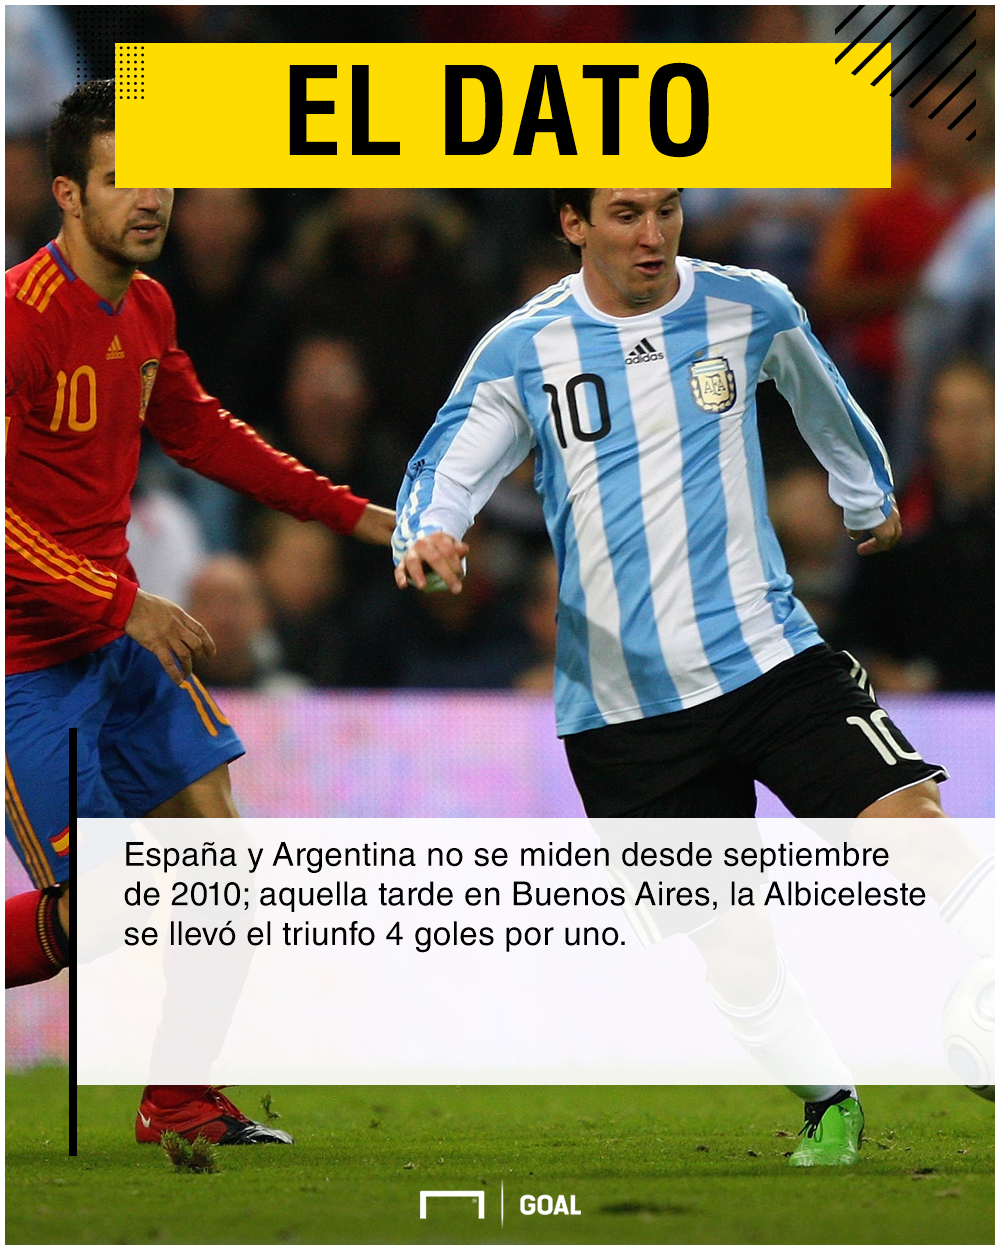 España vs Argentina